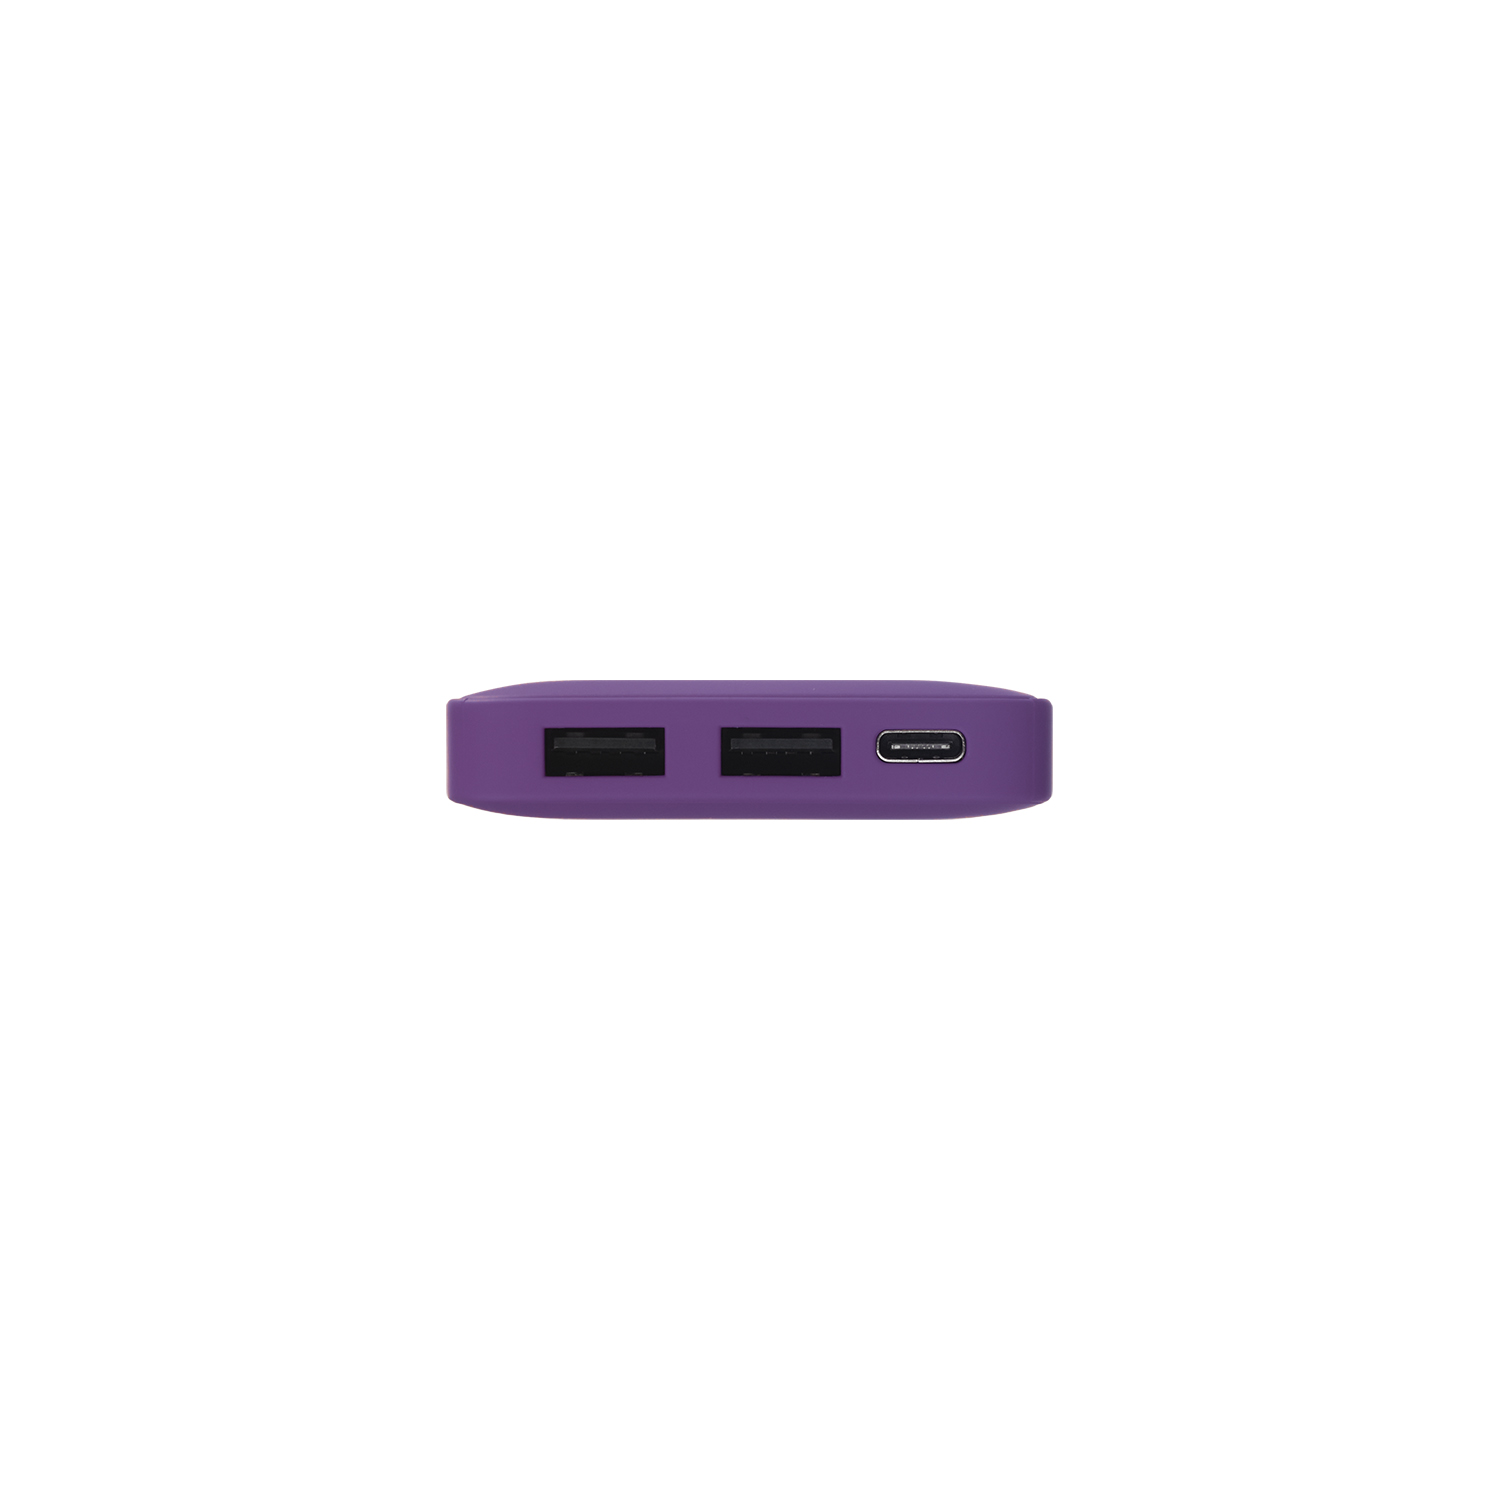 Внешний аккумулятор с подсветкой Ancor 5000 mAh, фиолетовый